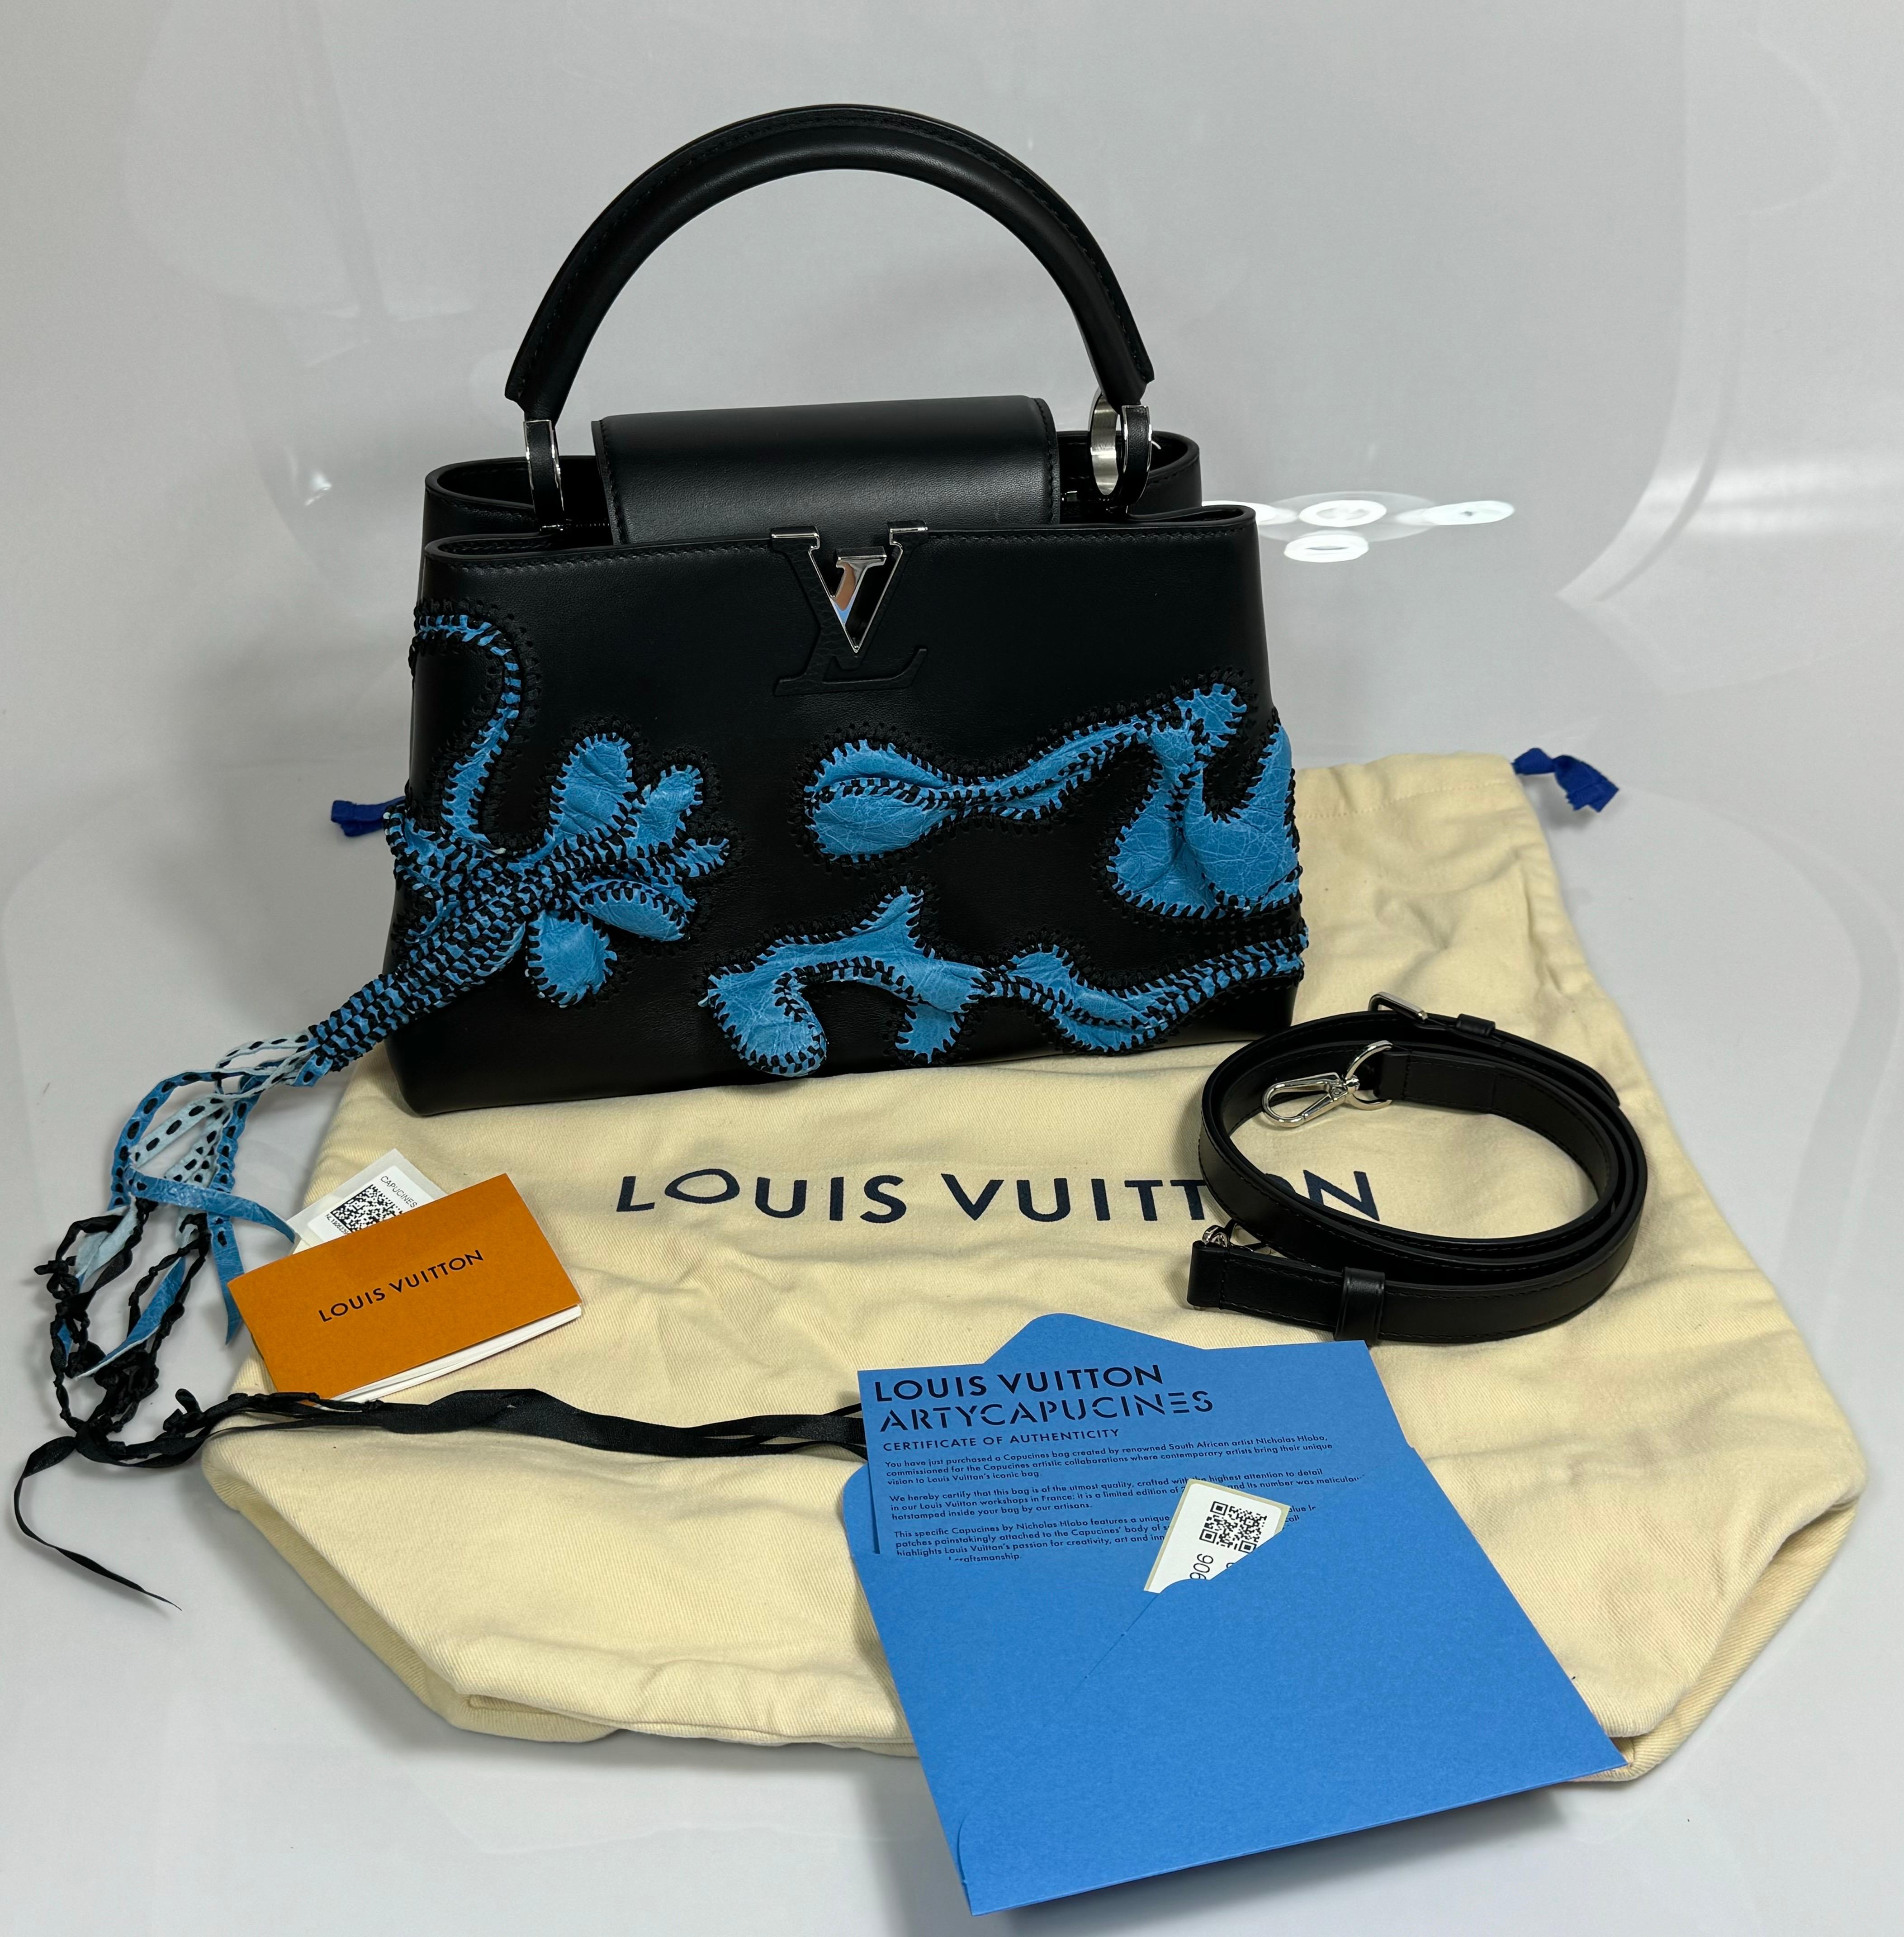 Louis Vuitton Limited Edition Nicholas Hlobo's Artycapucines Handbag-NEW IN BOX en vente 14